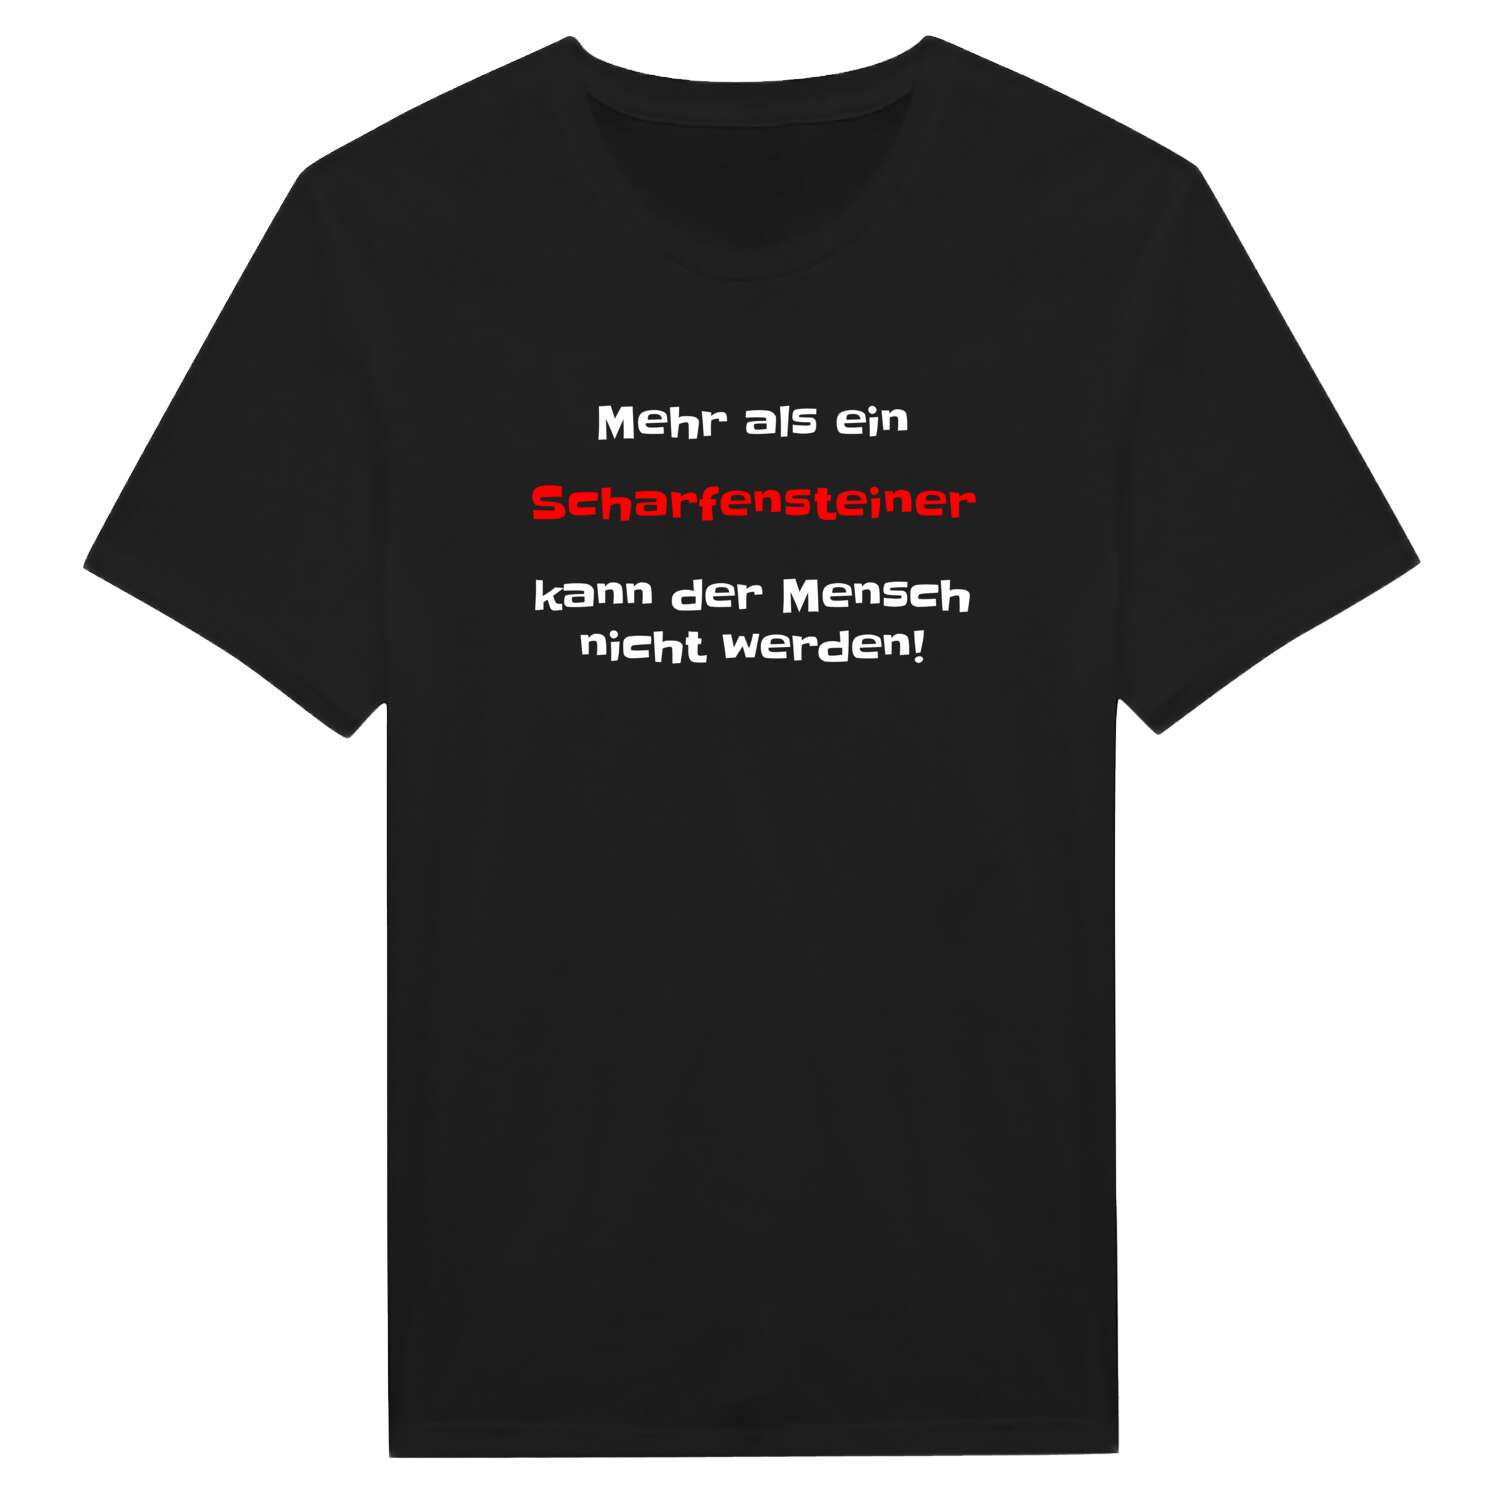 Scharfenstein T-Shirt »Mehr als ein«